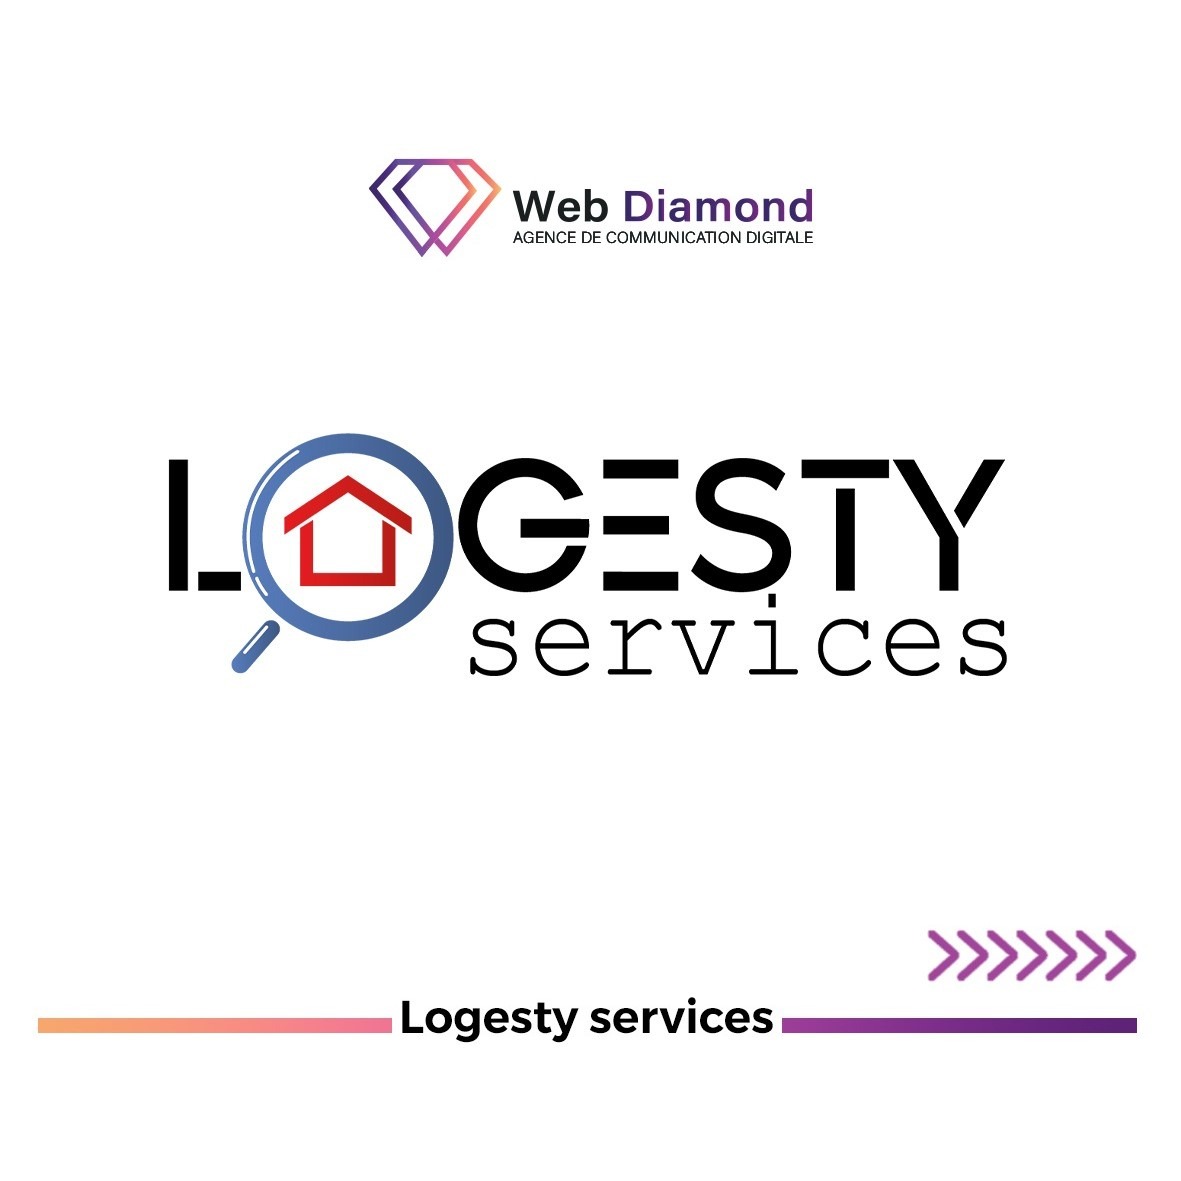 créer un logo logesty services